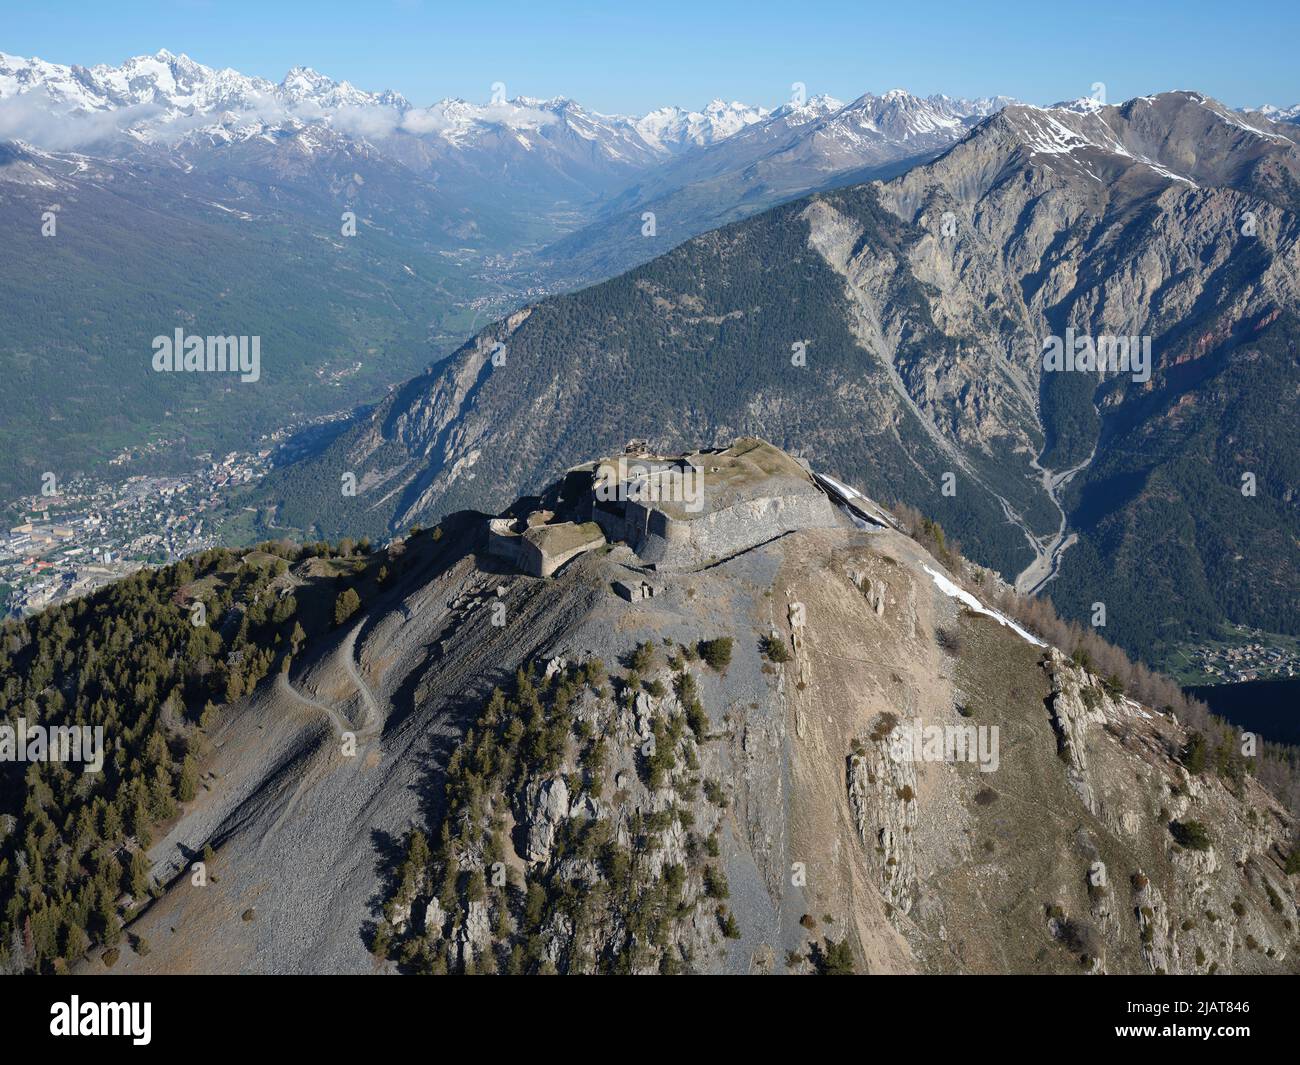 VISTA AEREA. Forte de l'Infernet con il Massiccio degli Ecrins in lontananza. Alte Alpi, Francia. Foto Stock